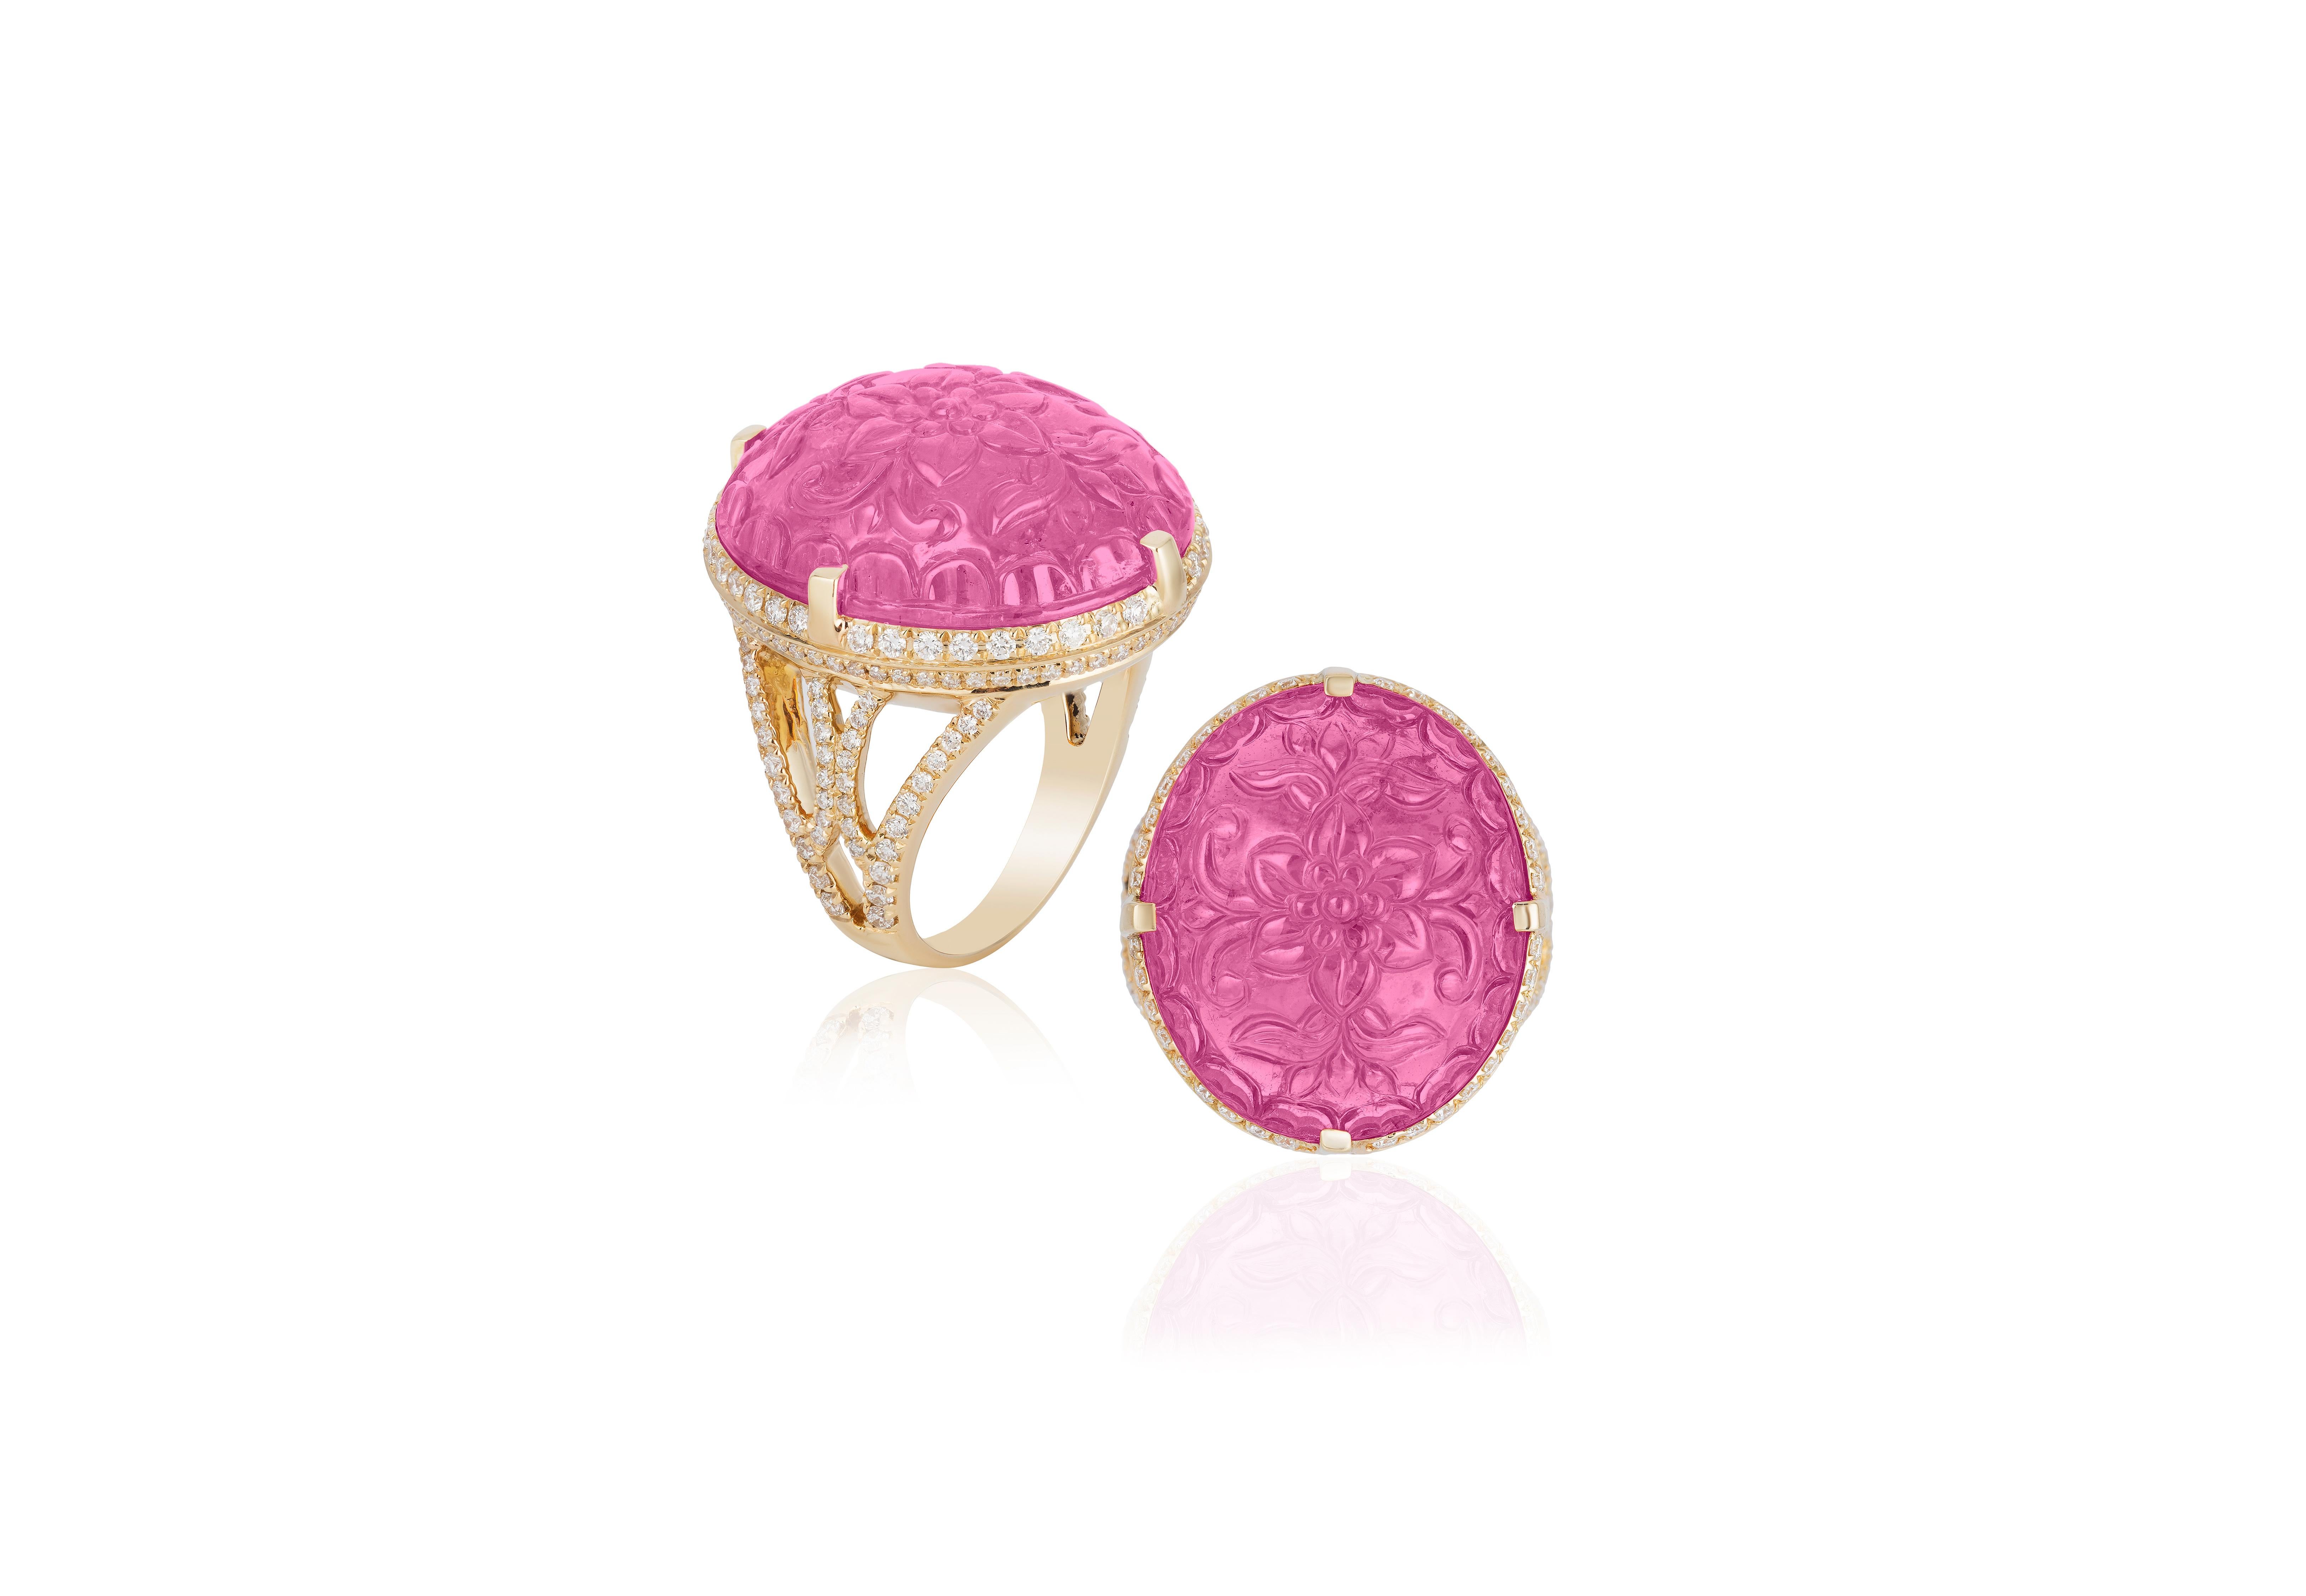 Dies ist ein einzigartiges Carved Pink Turmalin Oval Form Ring in 18K Gelbgold, von 